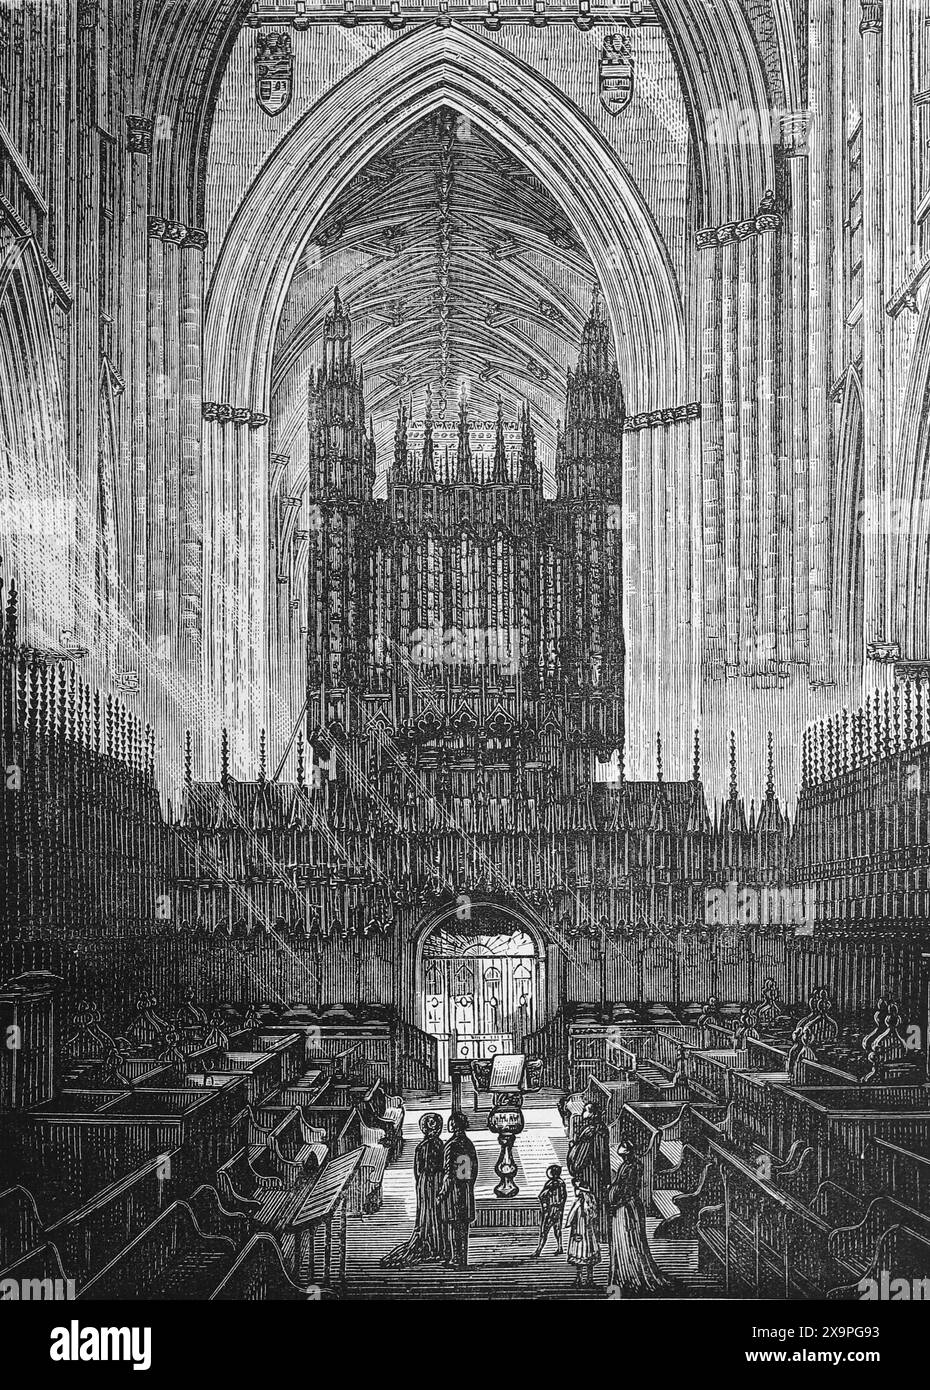 Der Chor of York Minster, wie er im späten 19. Jahrhundert erschien. Schwarz-weiß-Illustration aus unserem eigenen Land Band III, veröffentlicht von Cassell, Petter, Galpin & Co. Im späten 19. Jahrhundert. Stockfoto